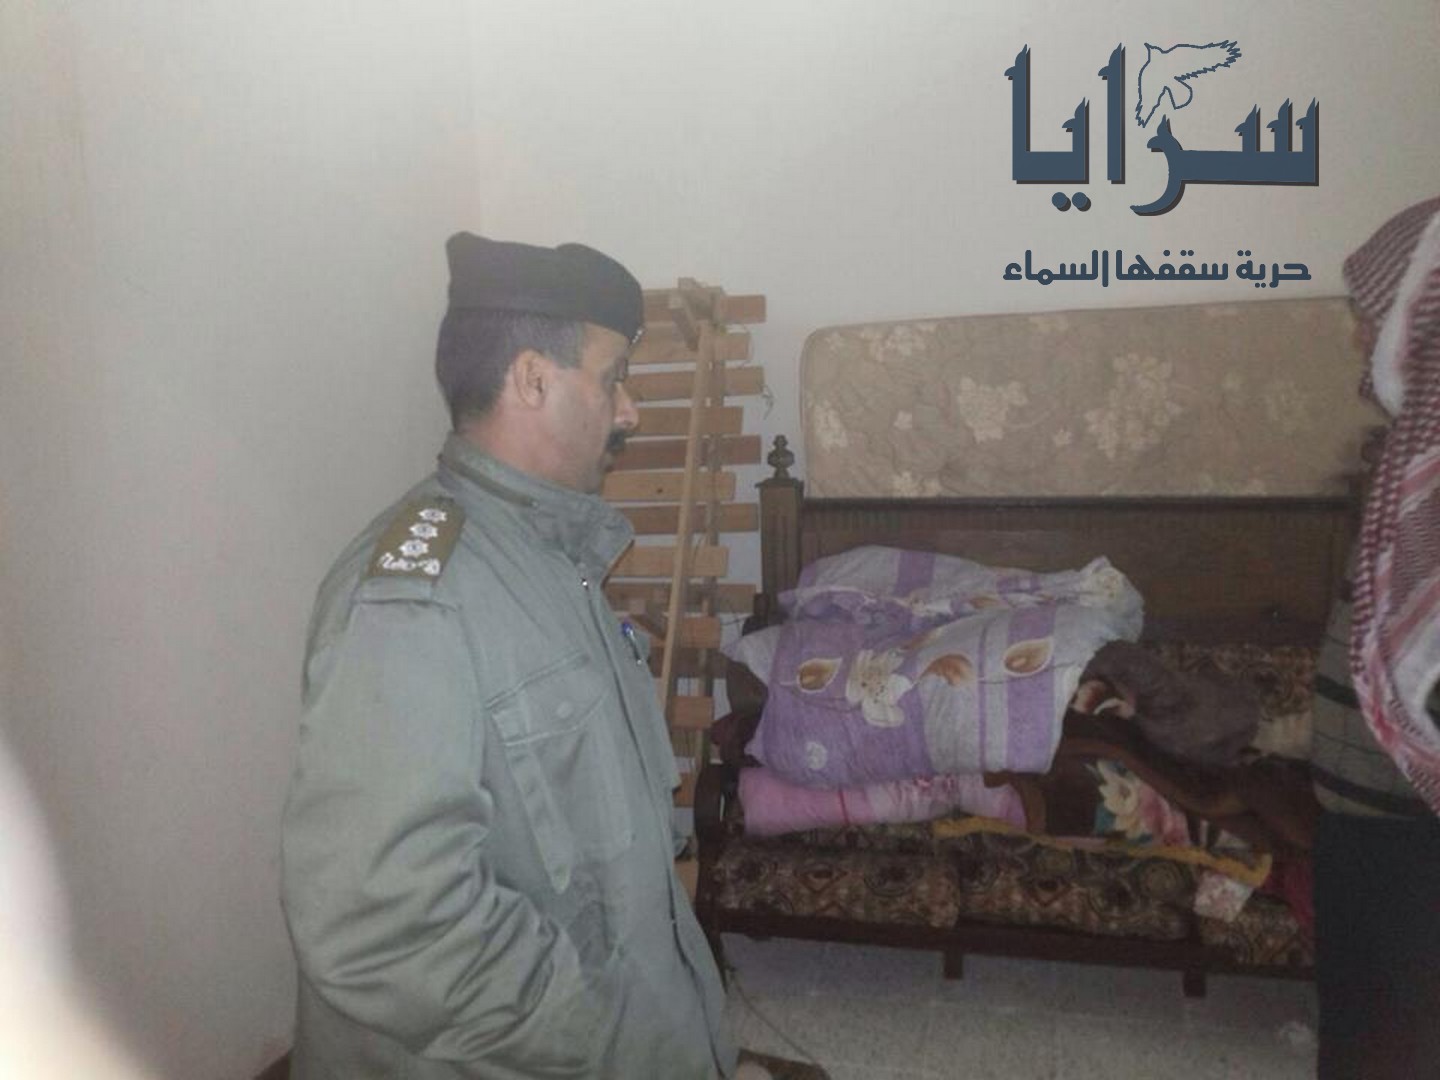 قوات البادية تتدخل لإنقاذ عائلة داهمتها الامطار في بلدة السرحان